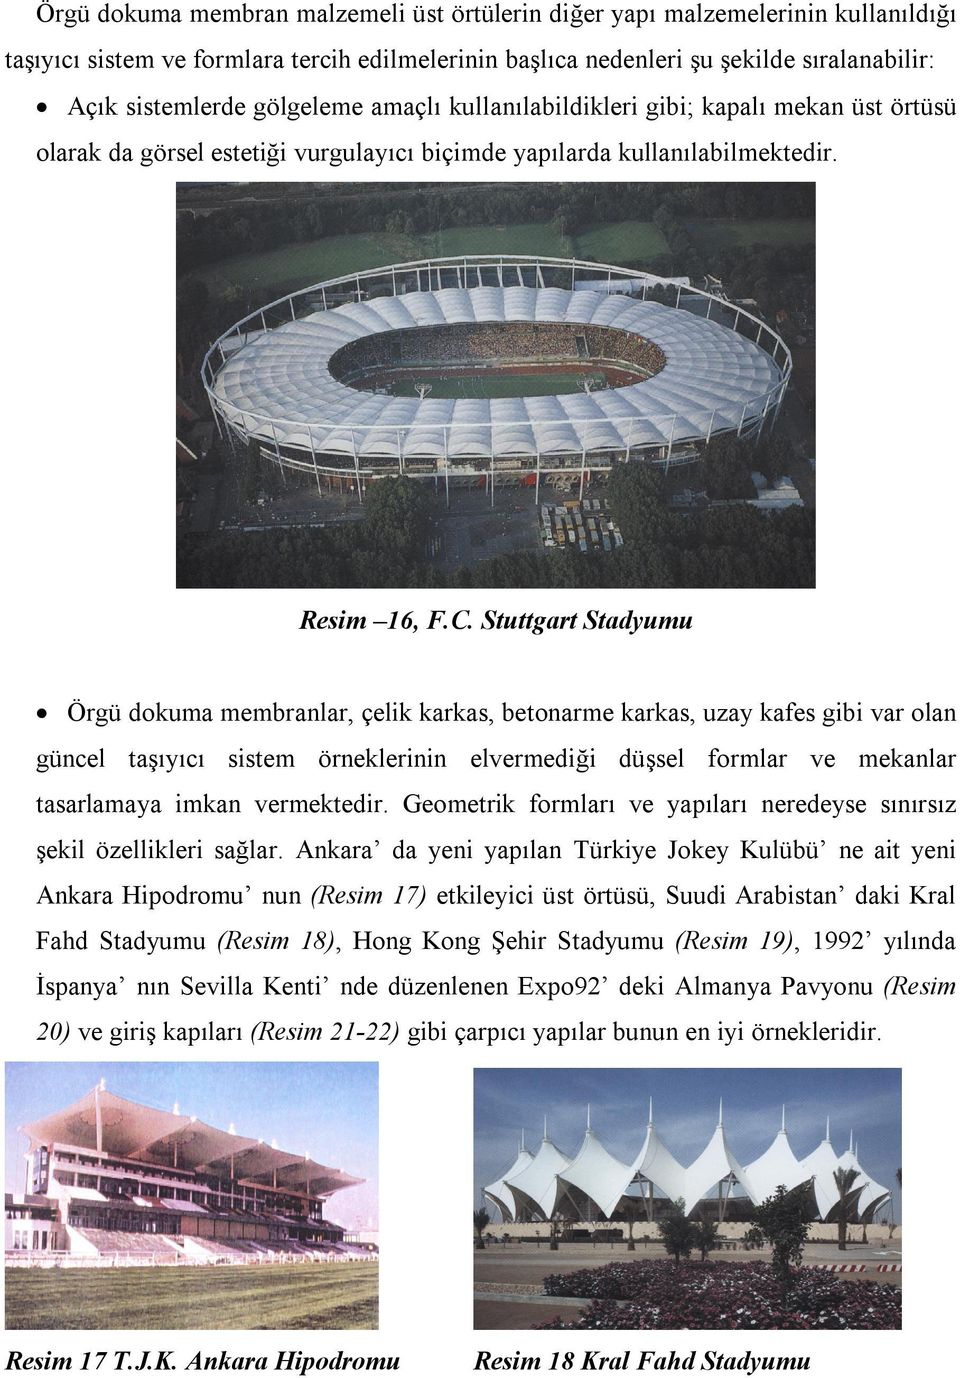 Stuttgart Stadyumu Örgü dokuma membranlar, çelik karkas, betonarme karkas, uzay kafes gibi var olan güncel taşıyıcı sistem örneklerinin elvermediği düşsel formlar ve mekanlar tasarlamaya imkan